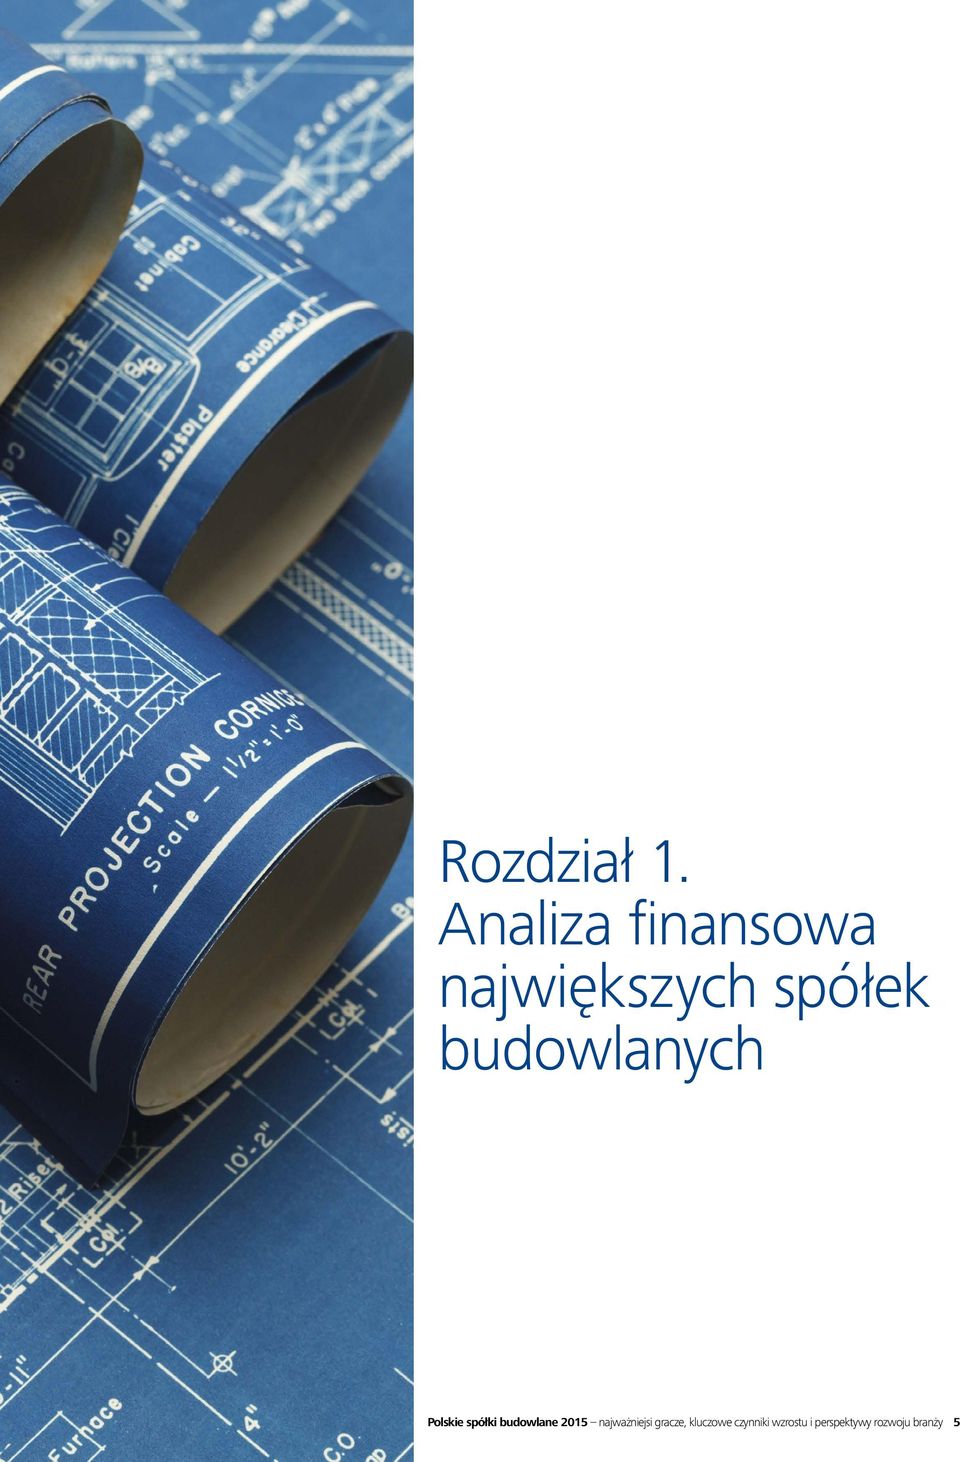 budowlanych Polskie spółki budowlane 2015